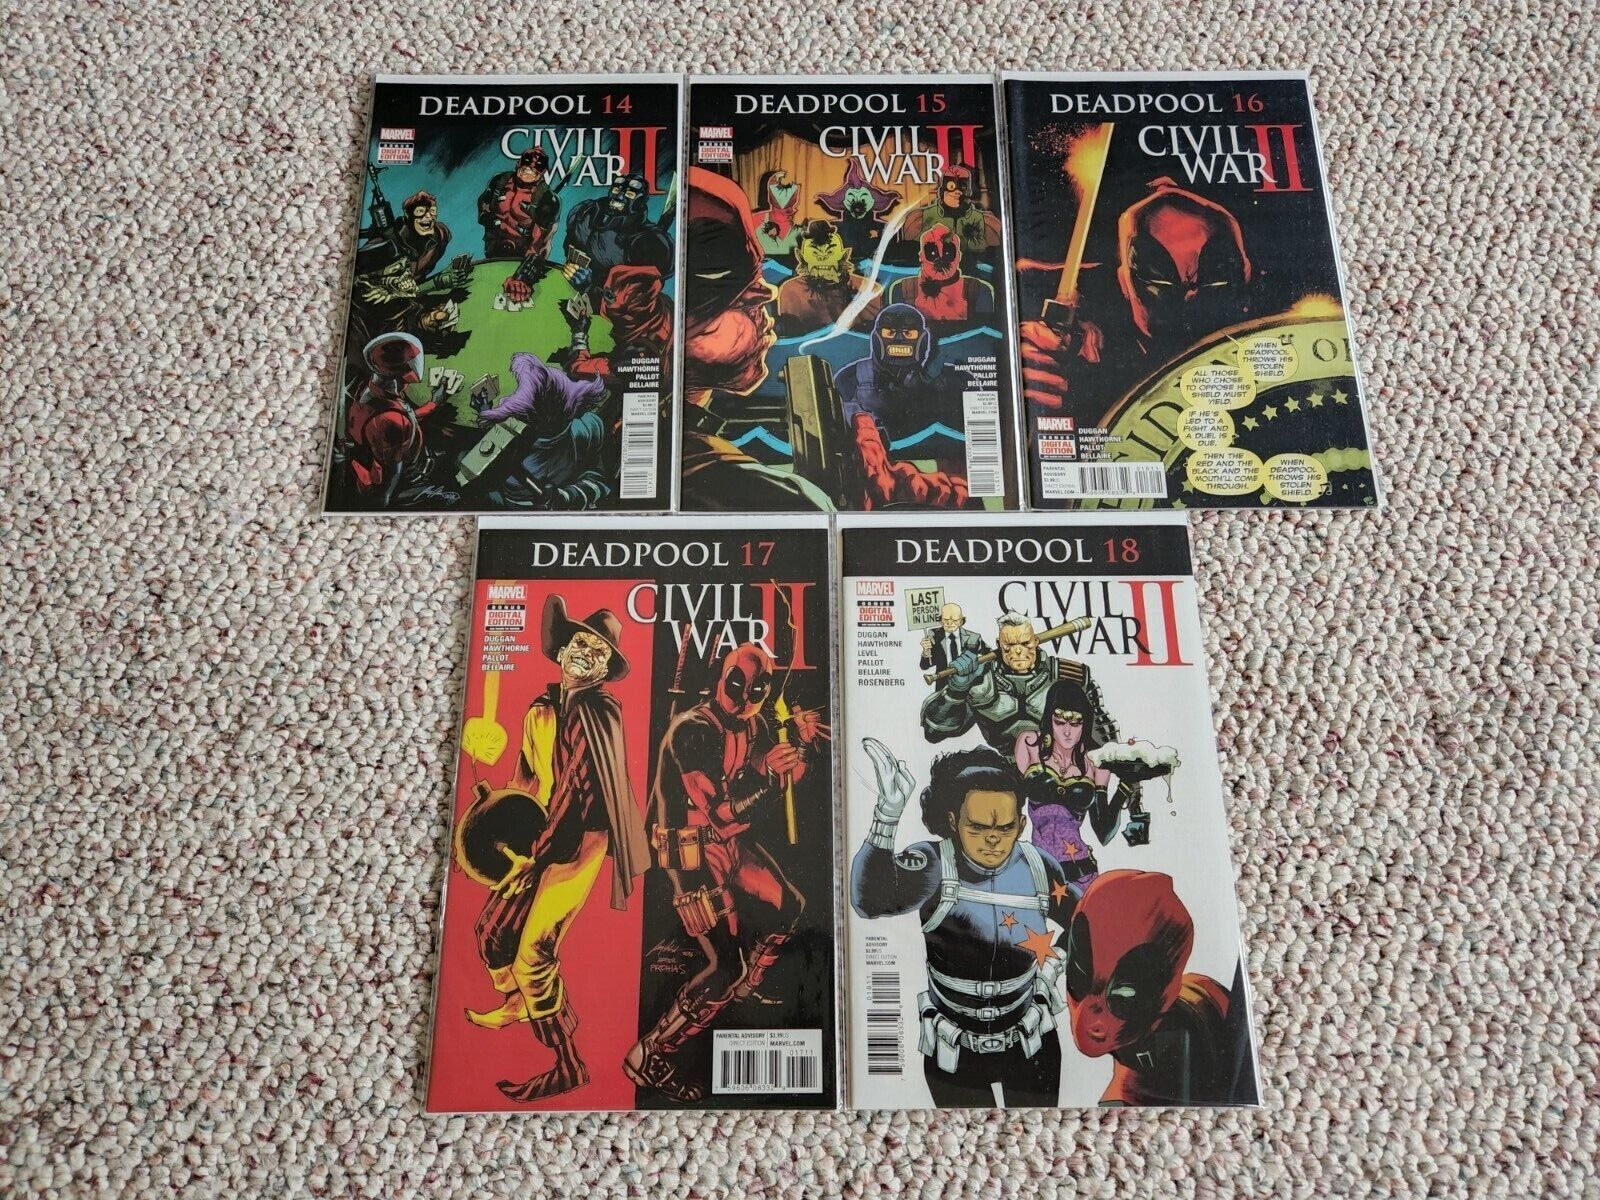 Civil War II Deadpool Comics #14-18 - Never been read